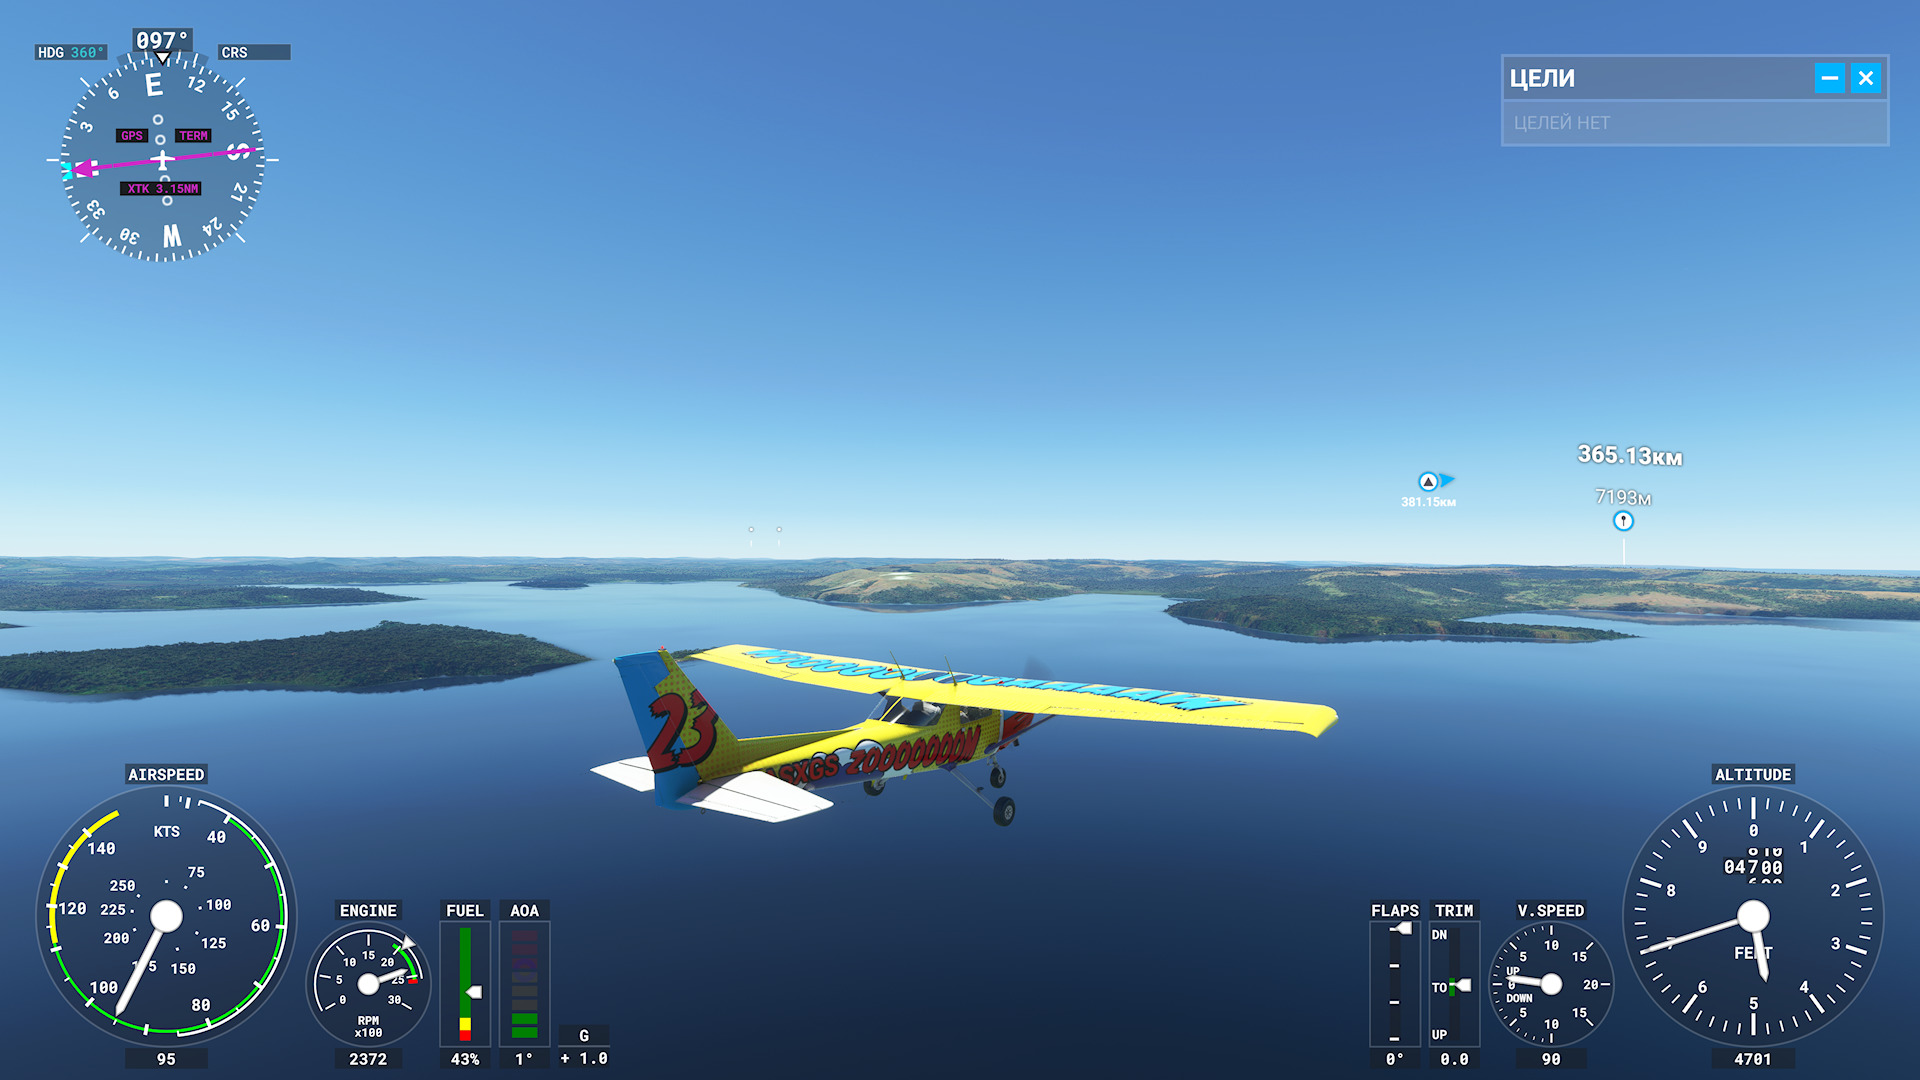 Уникальный консольный эксклюзив Xbox Series X|S: Обзор Microsoft Flight Simulator